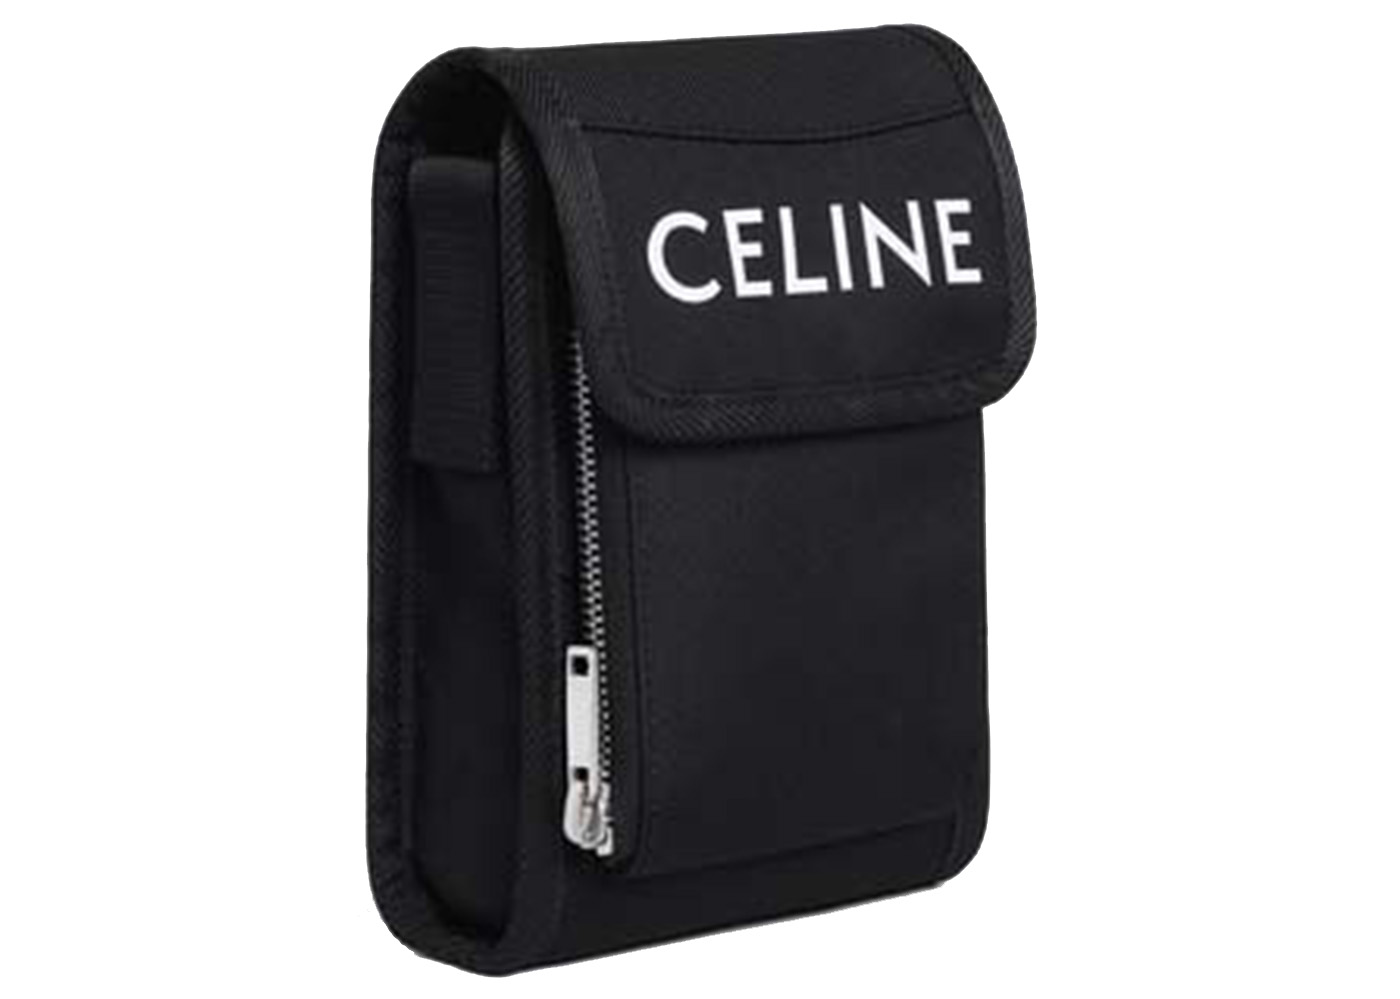 Celine Trekking Phone Pouch in Nylon Black